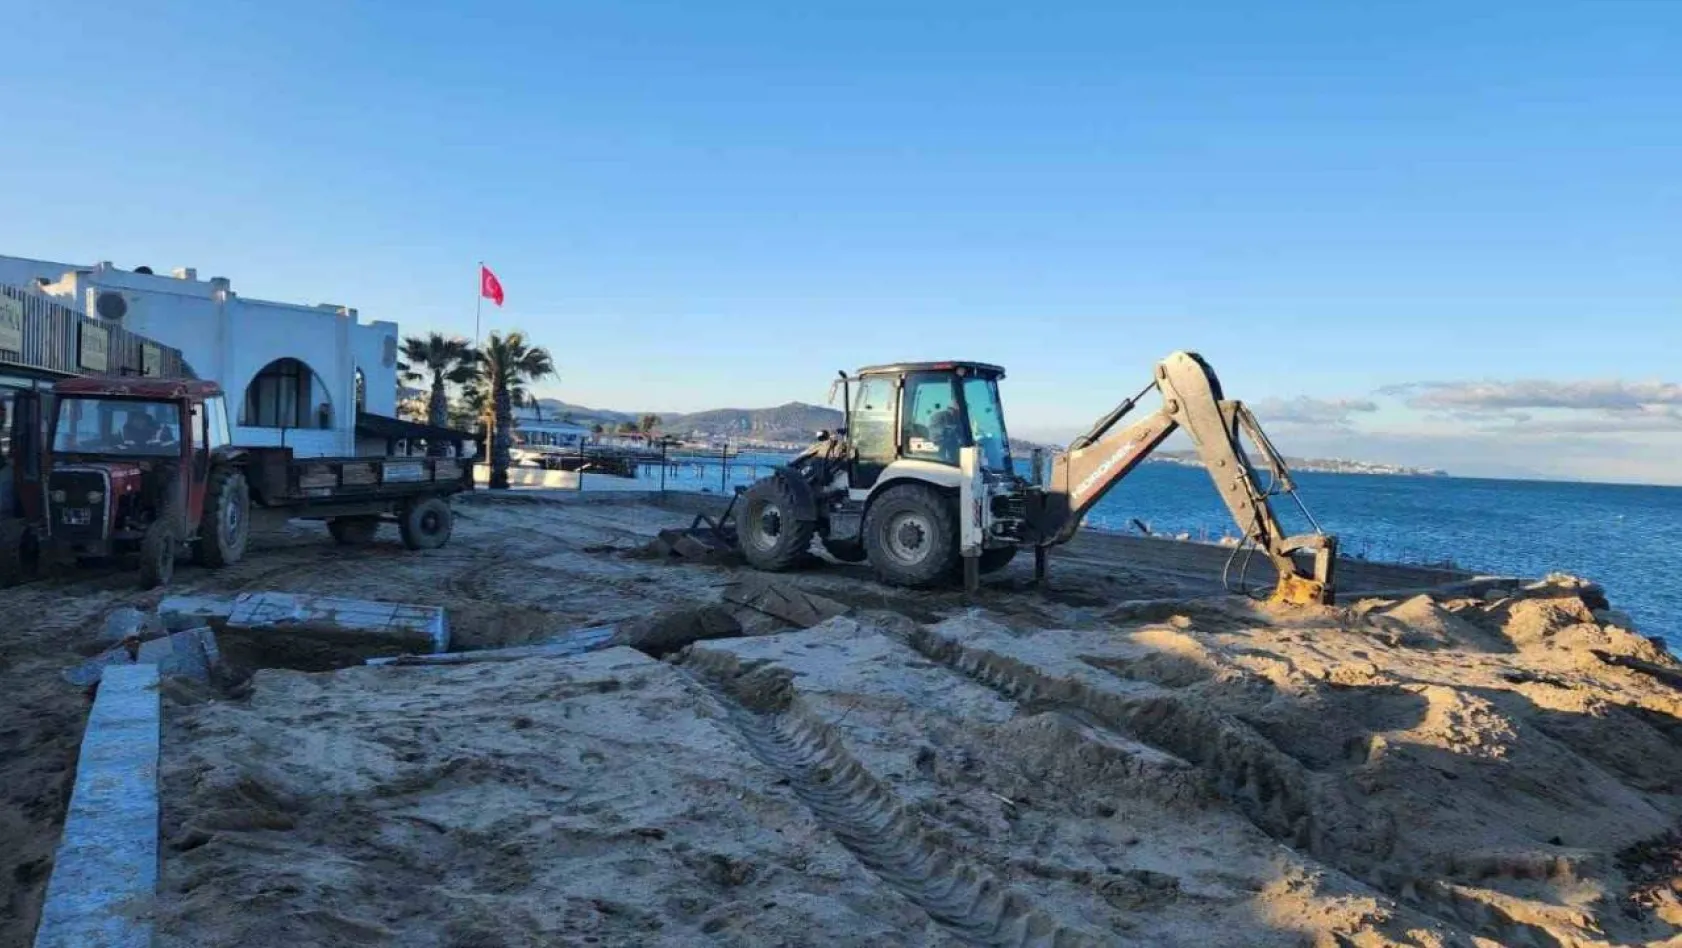 Ören Plajı'nda izinsiz yapılan beton setler yıkıldı